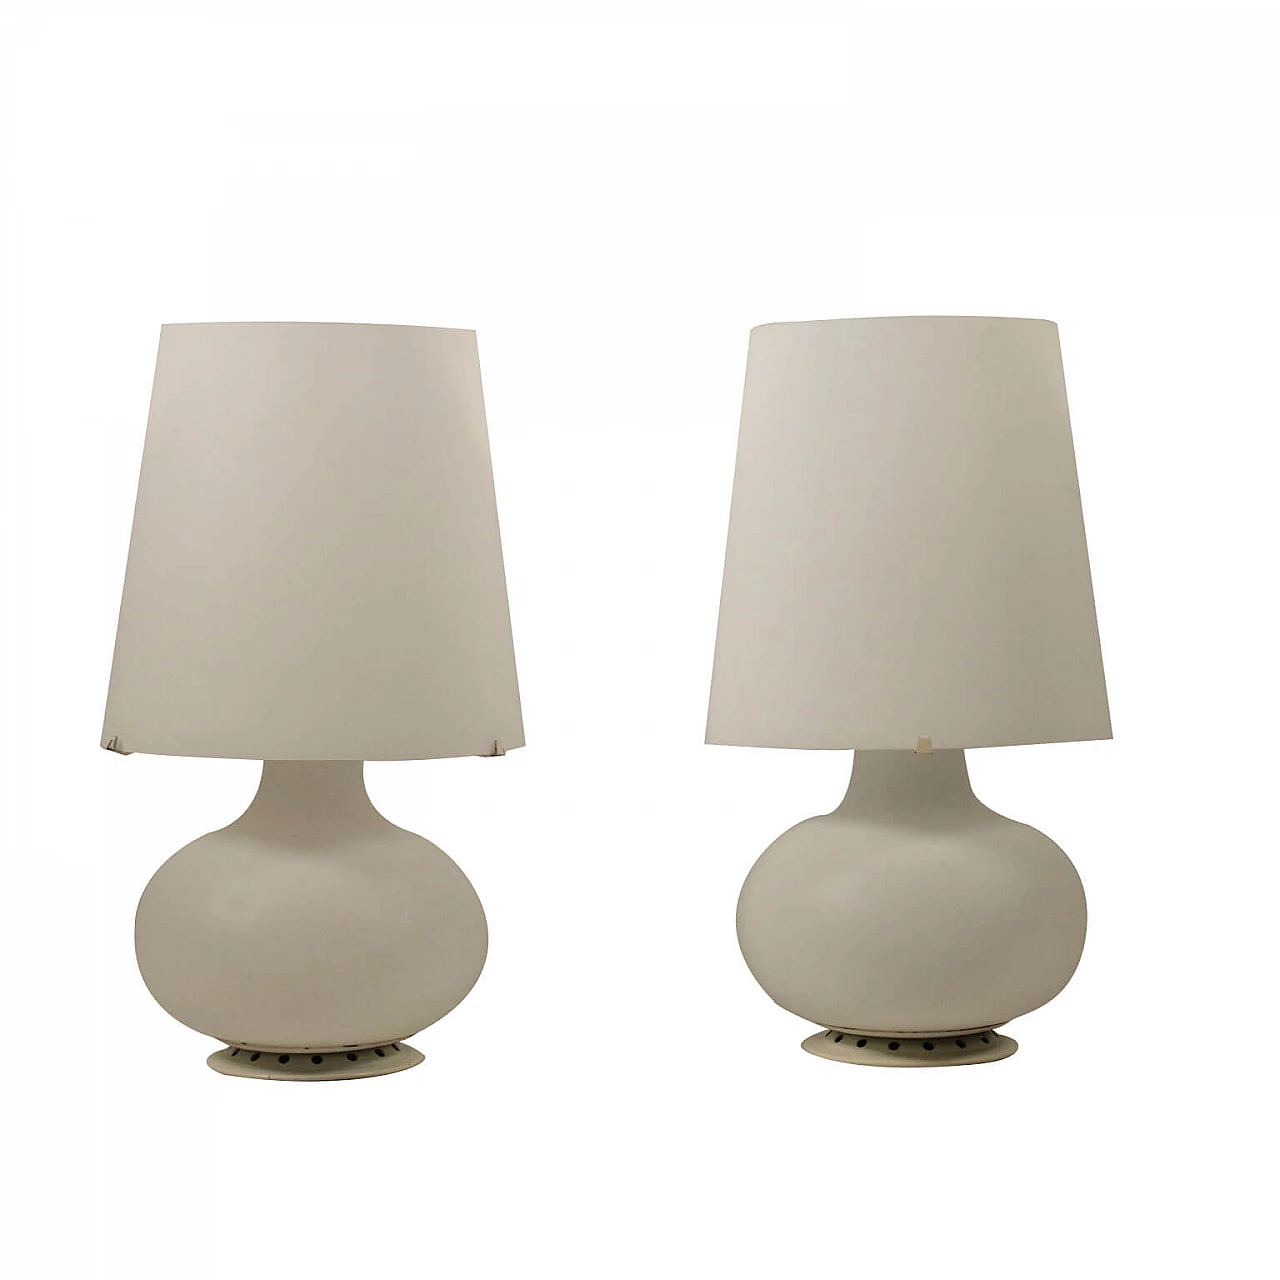 Pair of Max Ingrand lamps for FontanaArte 1125866